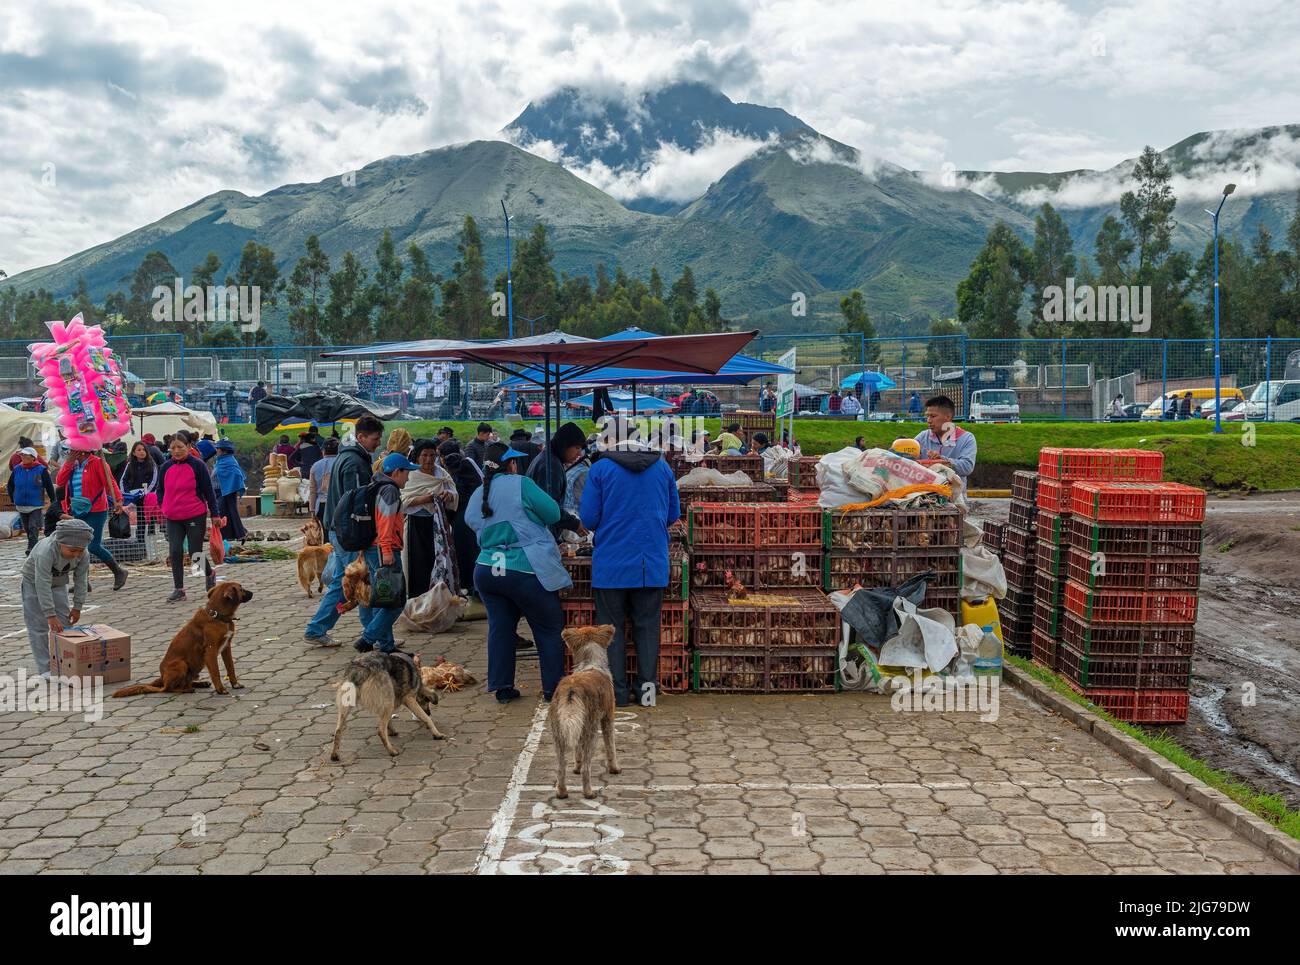 Lokaler Tiermarkt mit einem einheimischen ecuadorianischen Hühnerverkäufer mit dem Vulkan Cotacachi im Hintergrund, Otavalo, Ecuador. Stockfoto